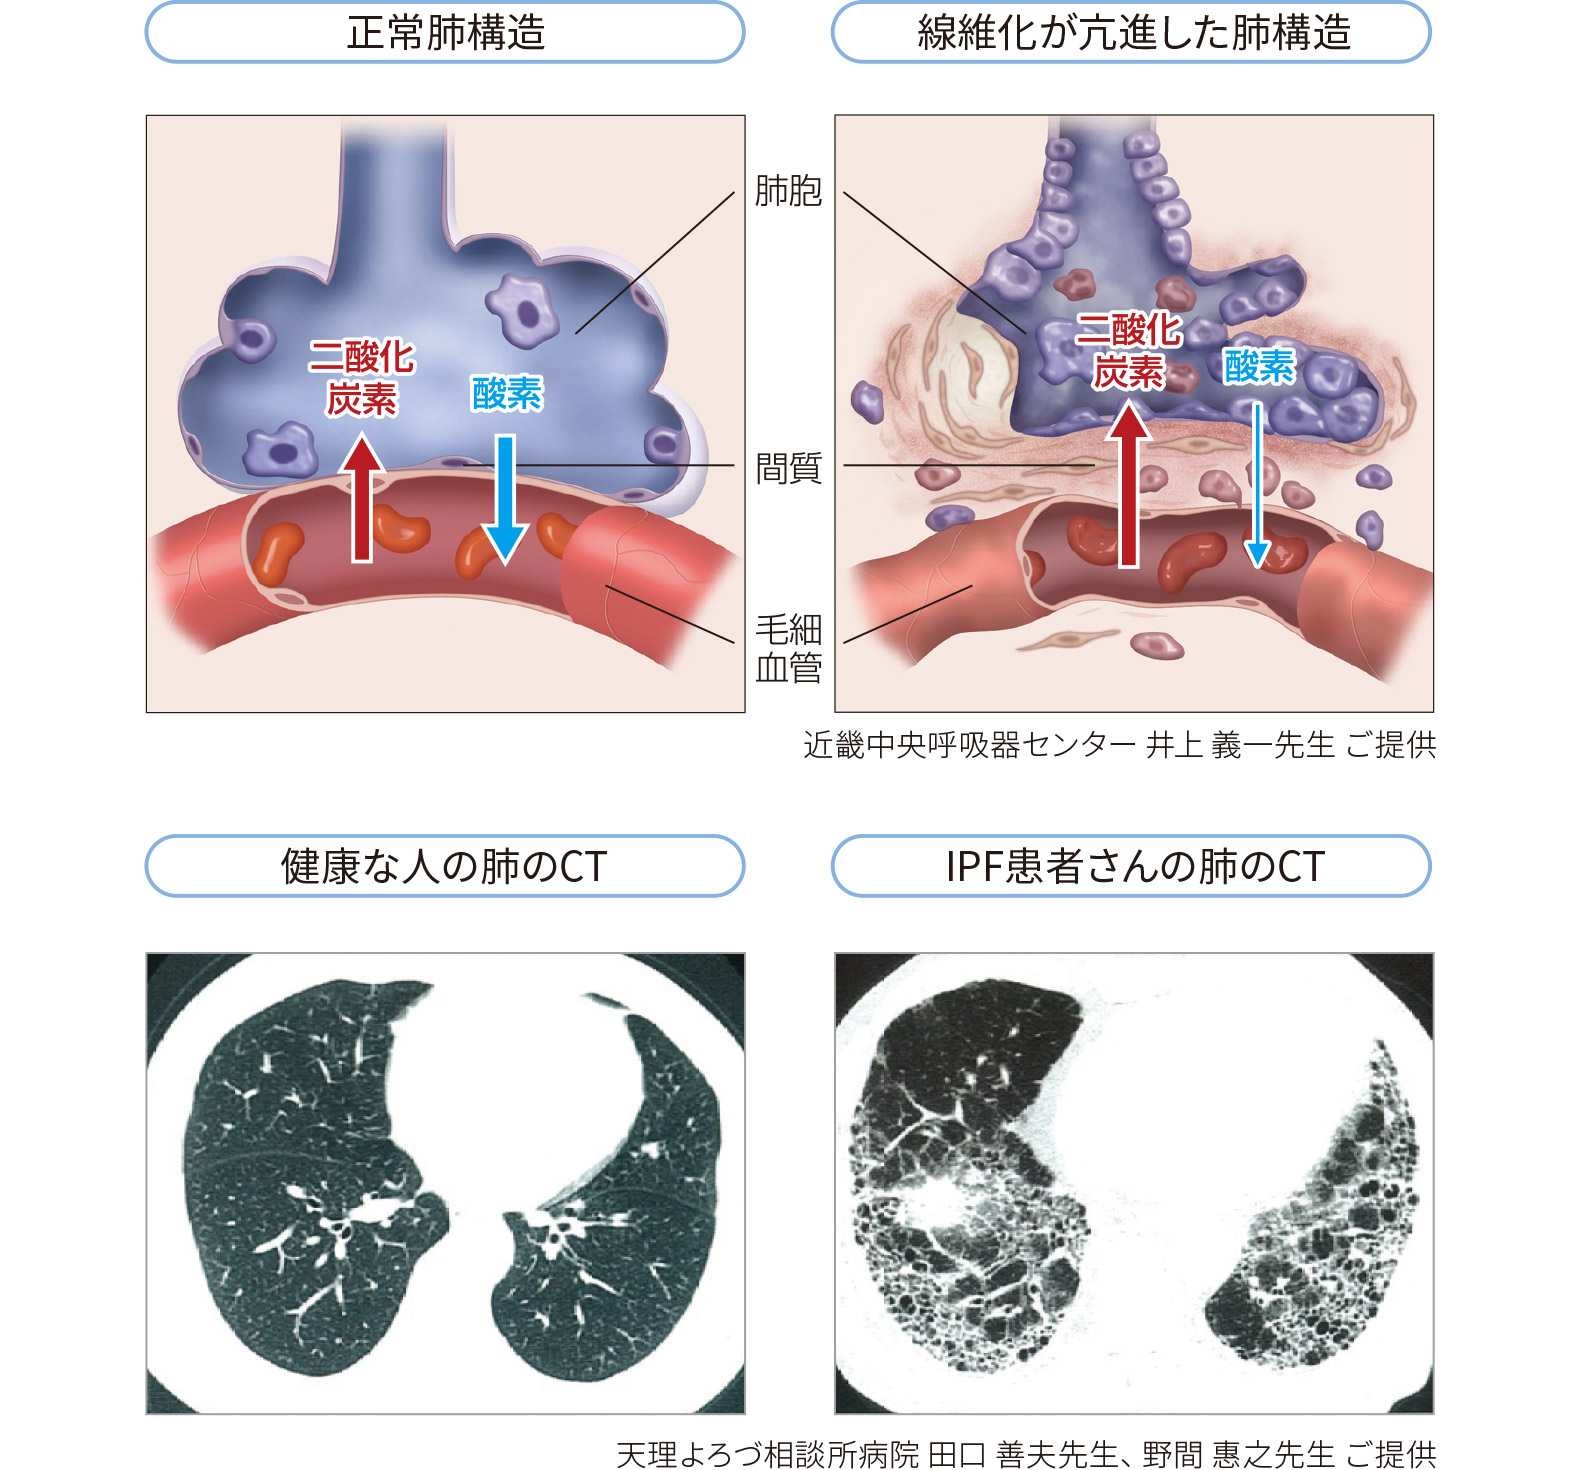 正常肺構造、線維化が亢進した肺構造、健康な人の肺のCT、IPF患者さんの肺のCT